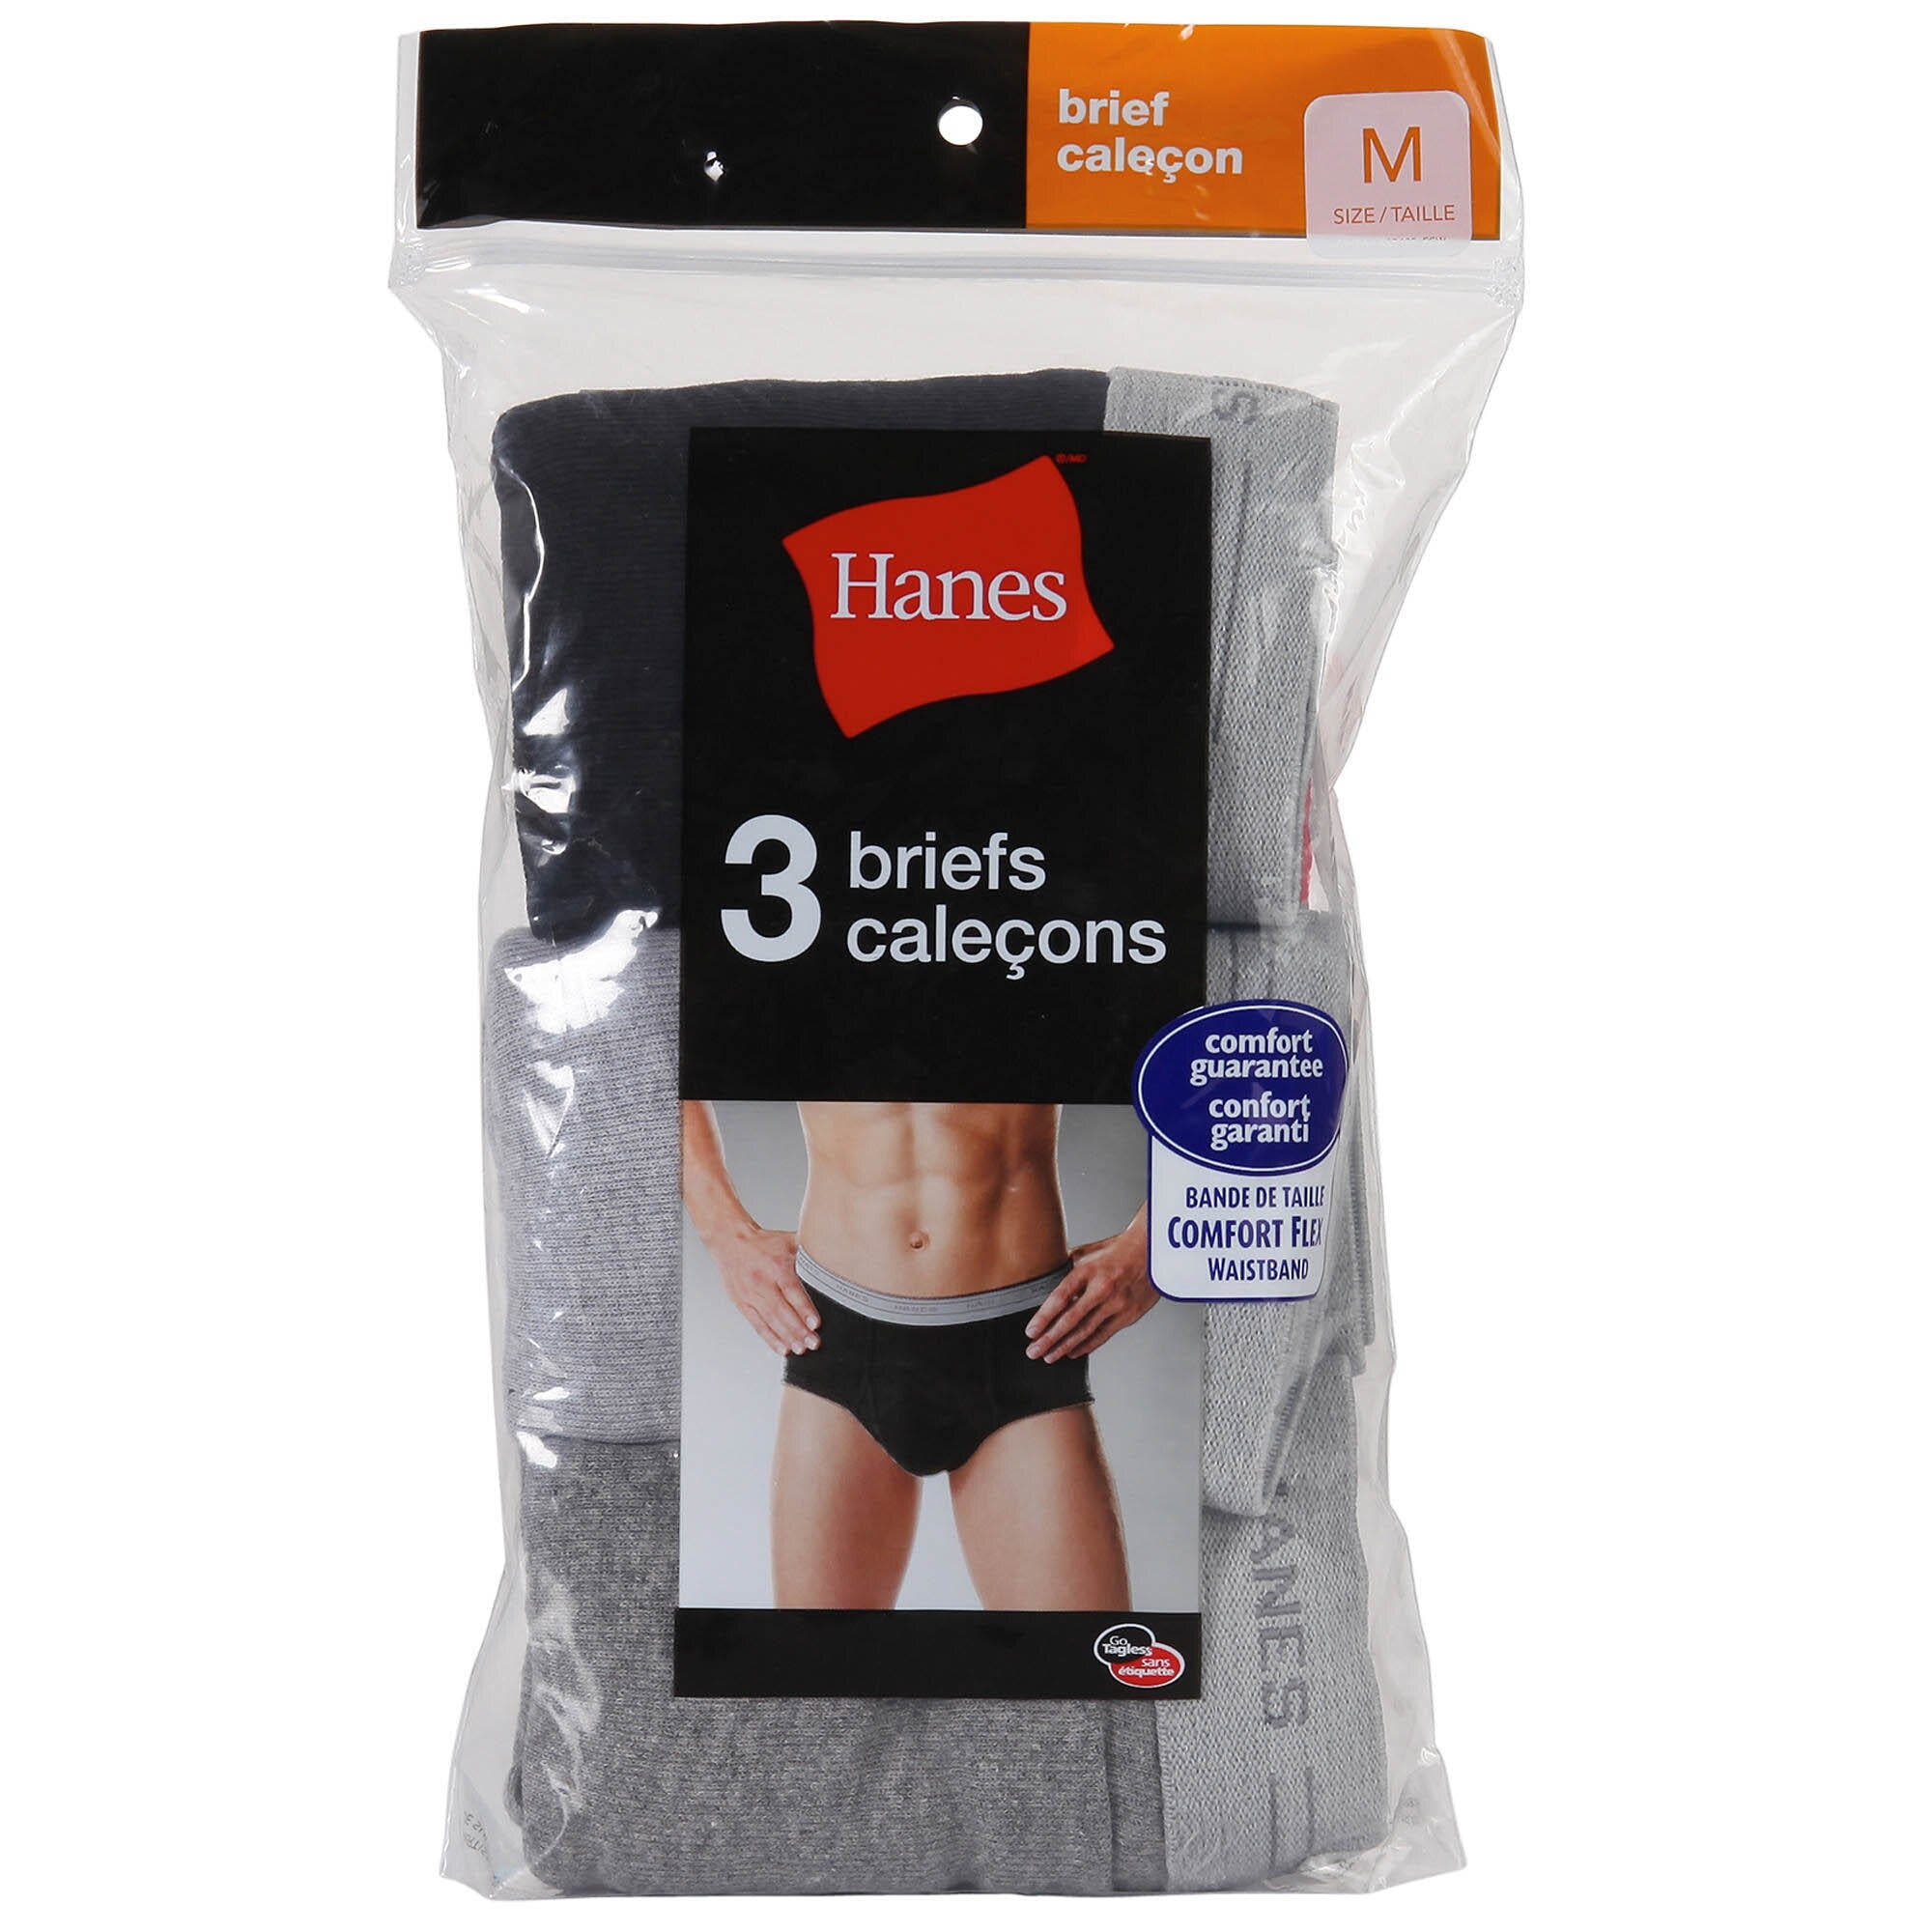 Hanes Women's Signature Cotton Brief Underwear, 6-Pack